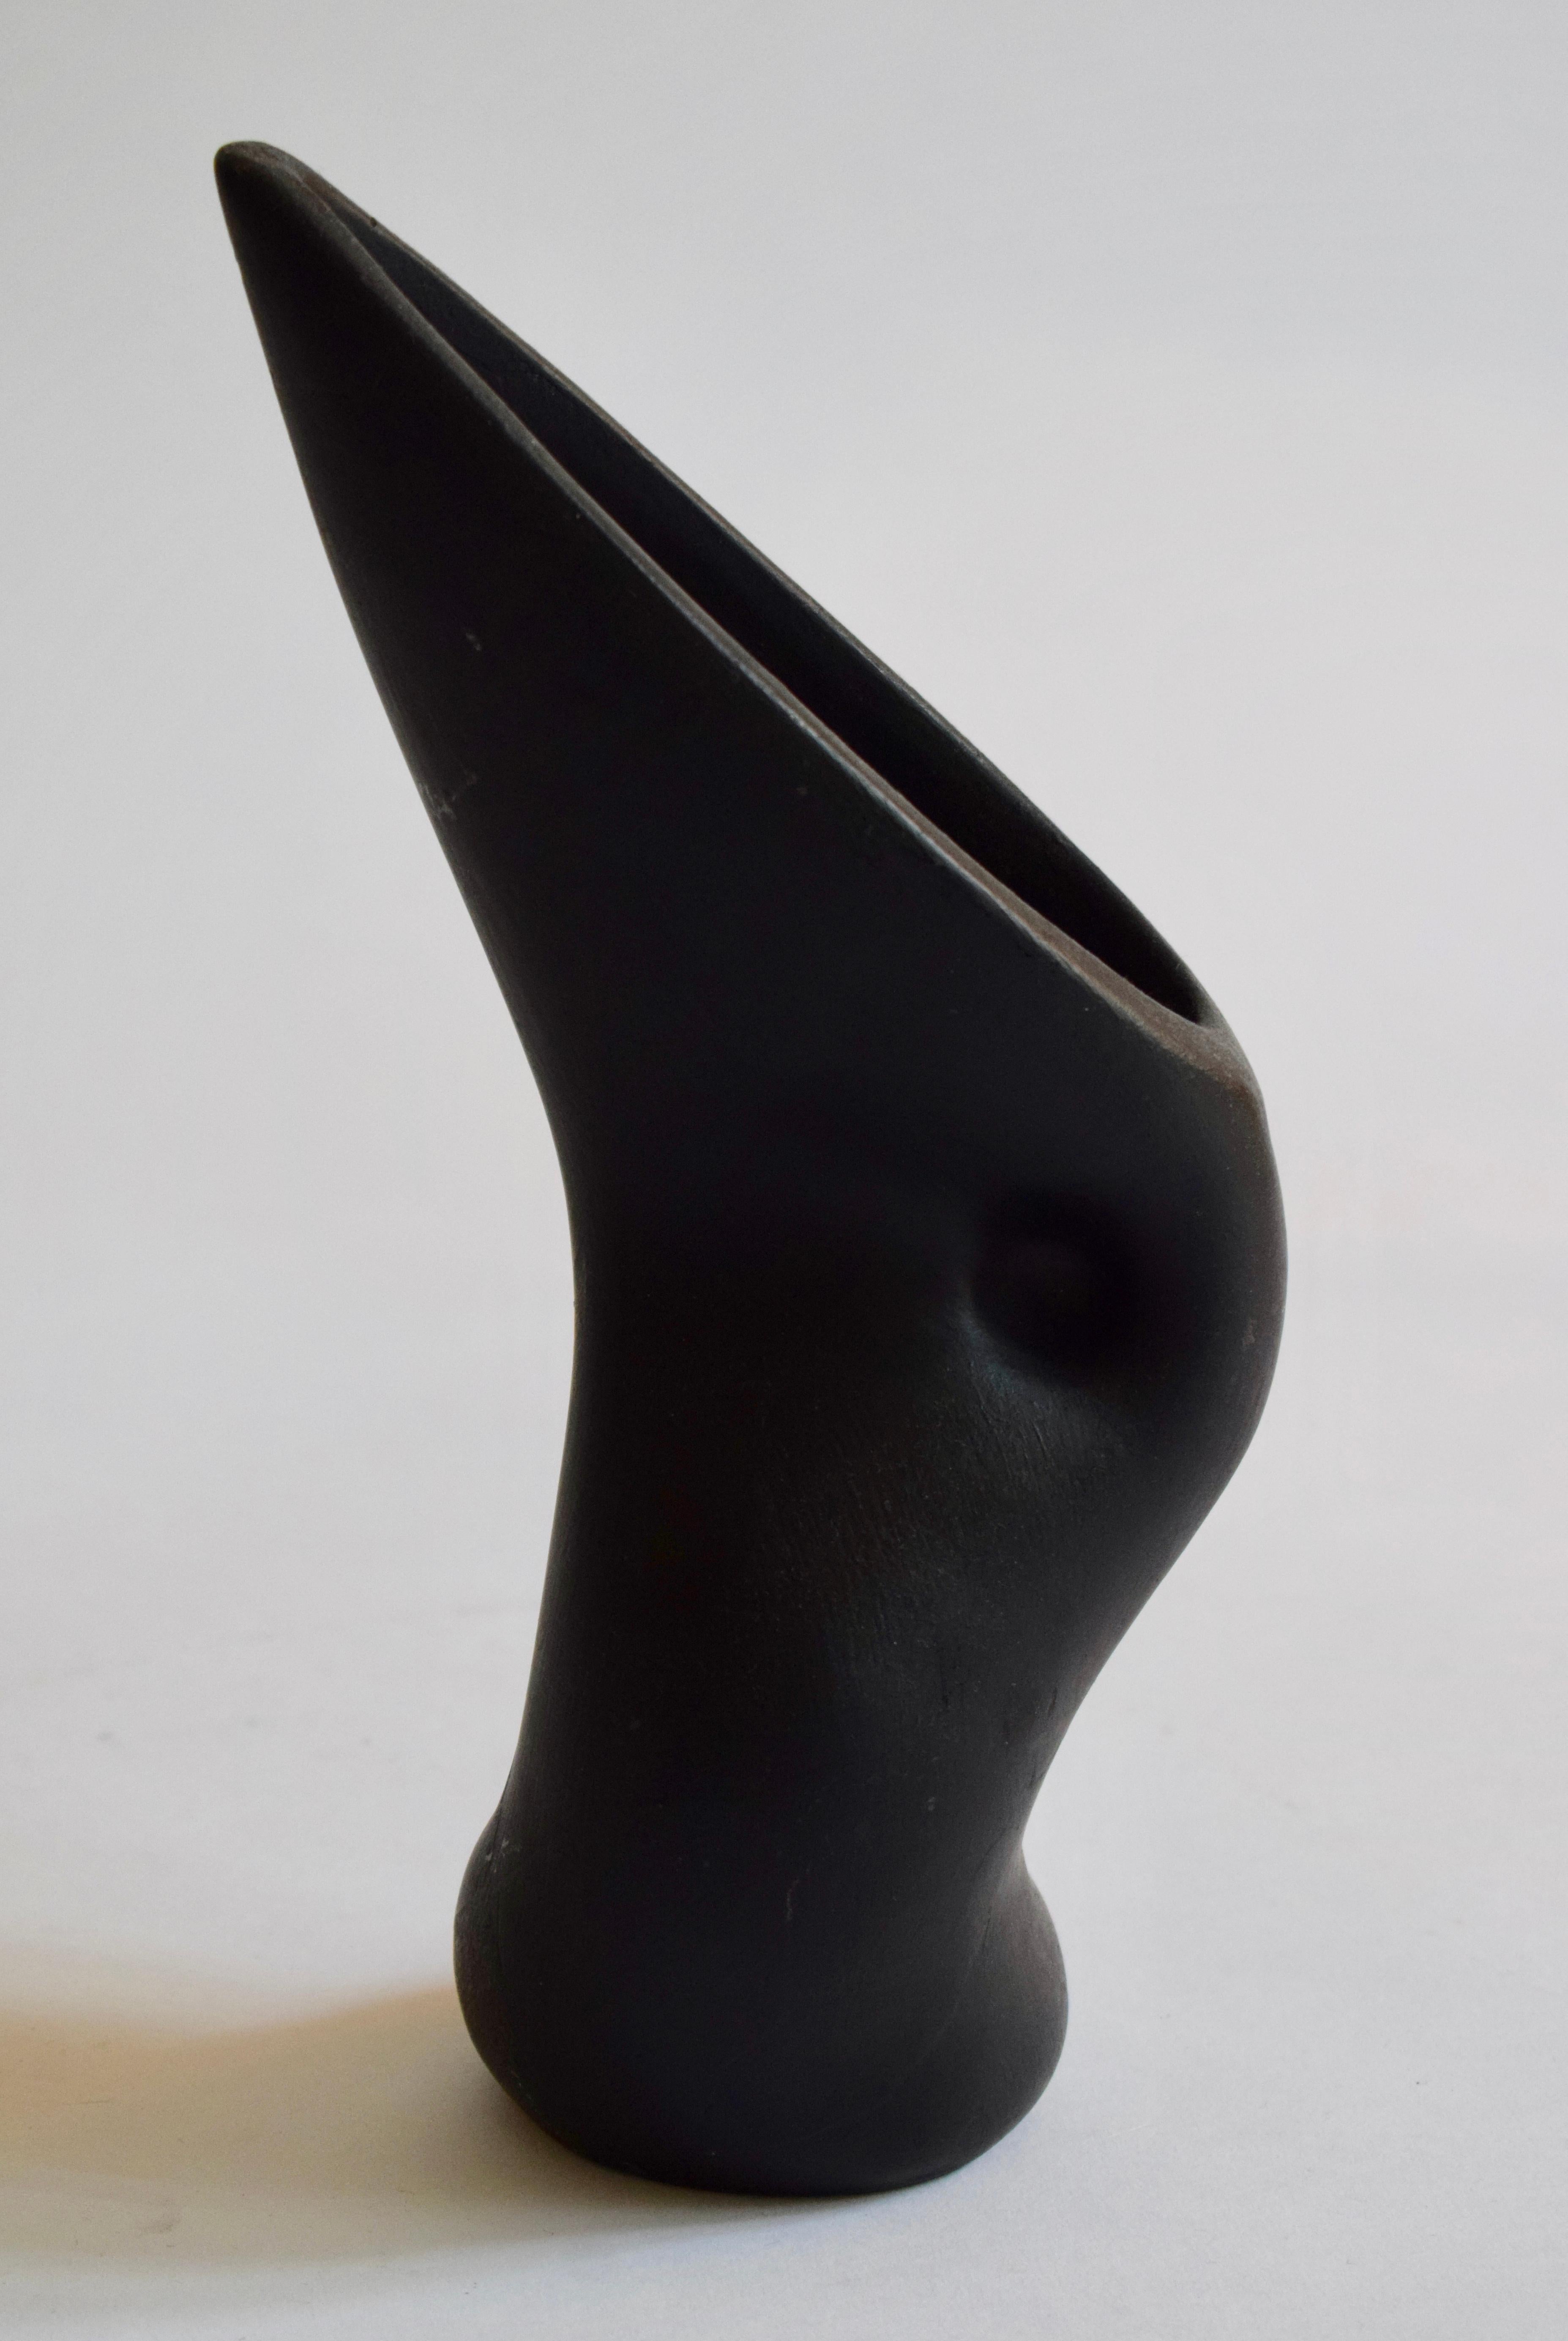 Rarissime vase à long bec en céramique émaillée noir de Louis Giraud 
Signé 